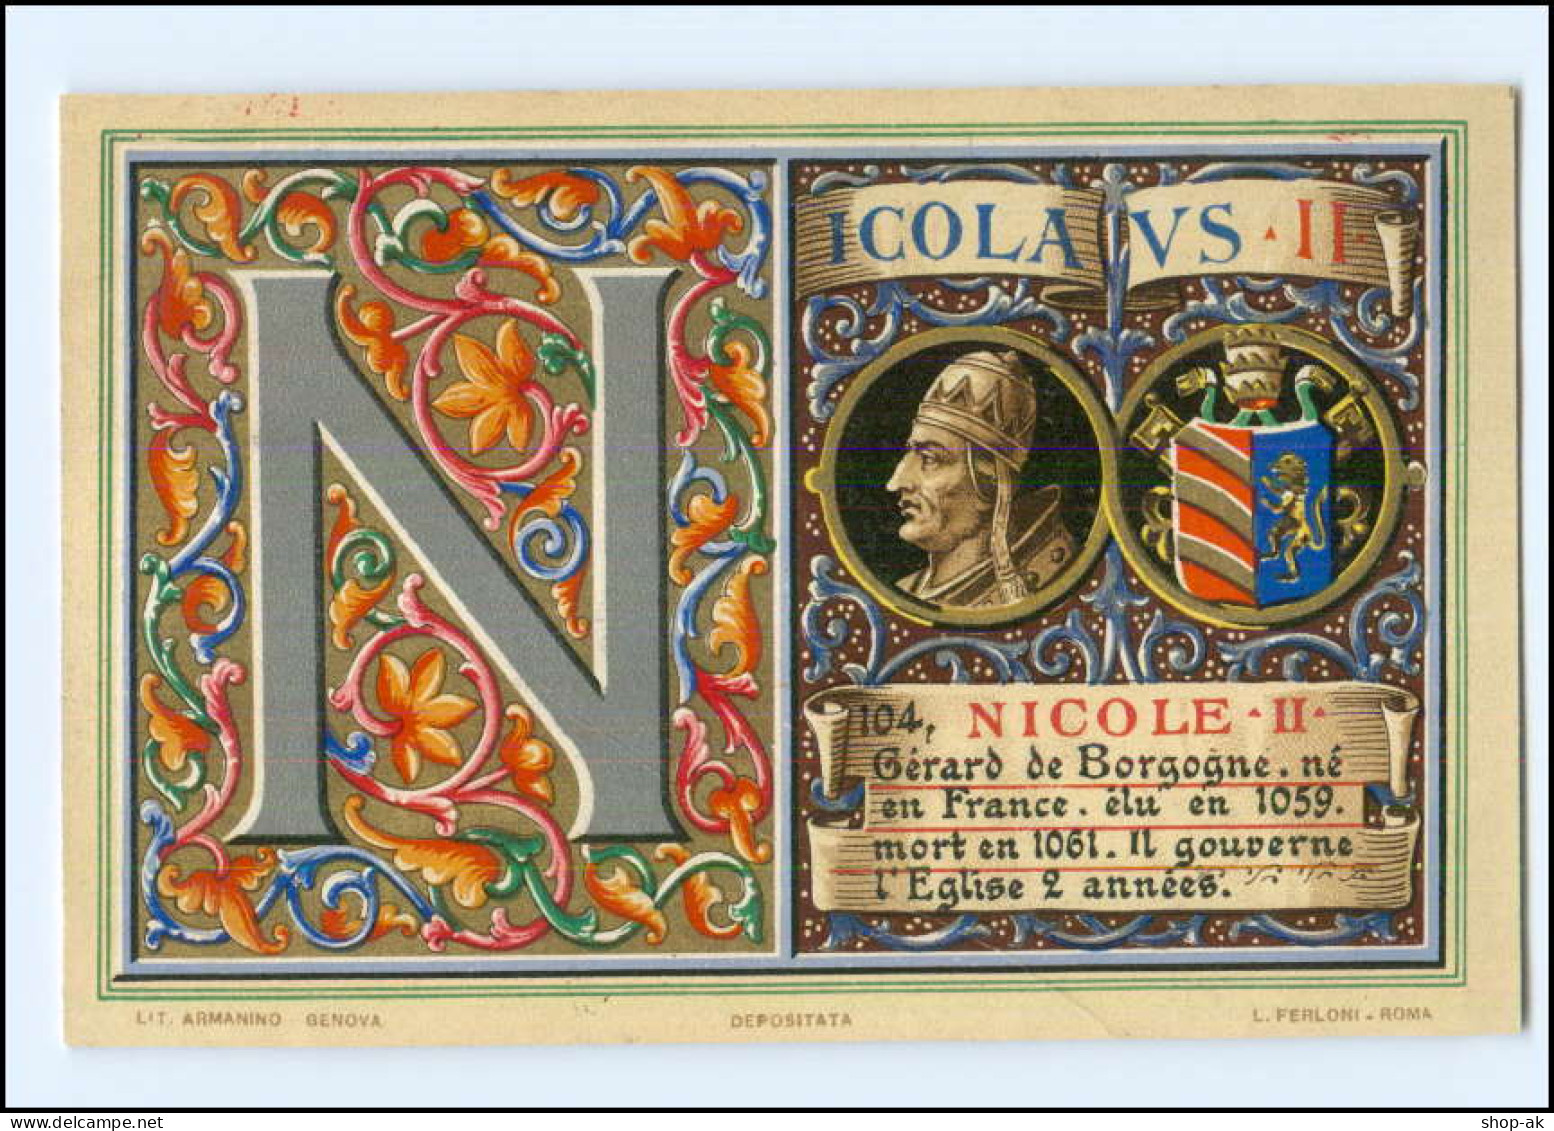 S2307/ Vatikan Papst Nikolaus II  Litho AK  1903  Karte Nr. 104 Vatican  - Vatikanstadt